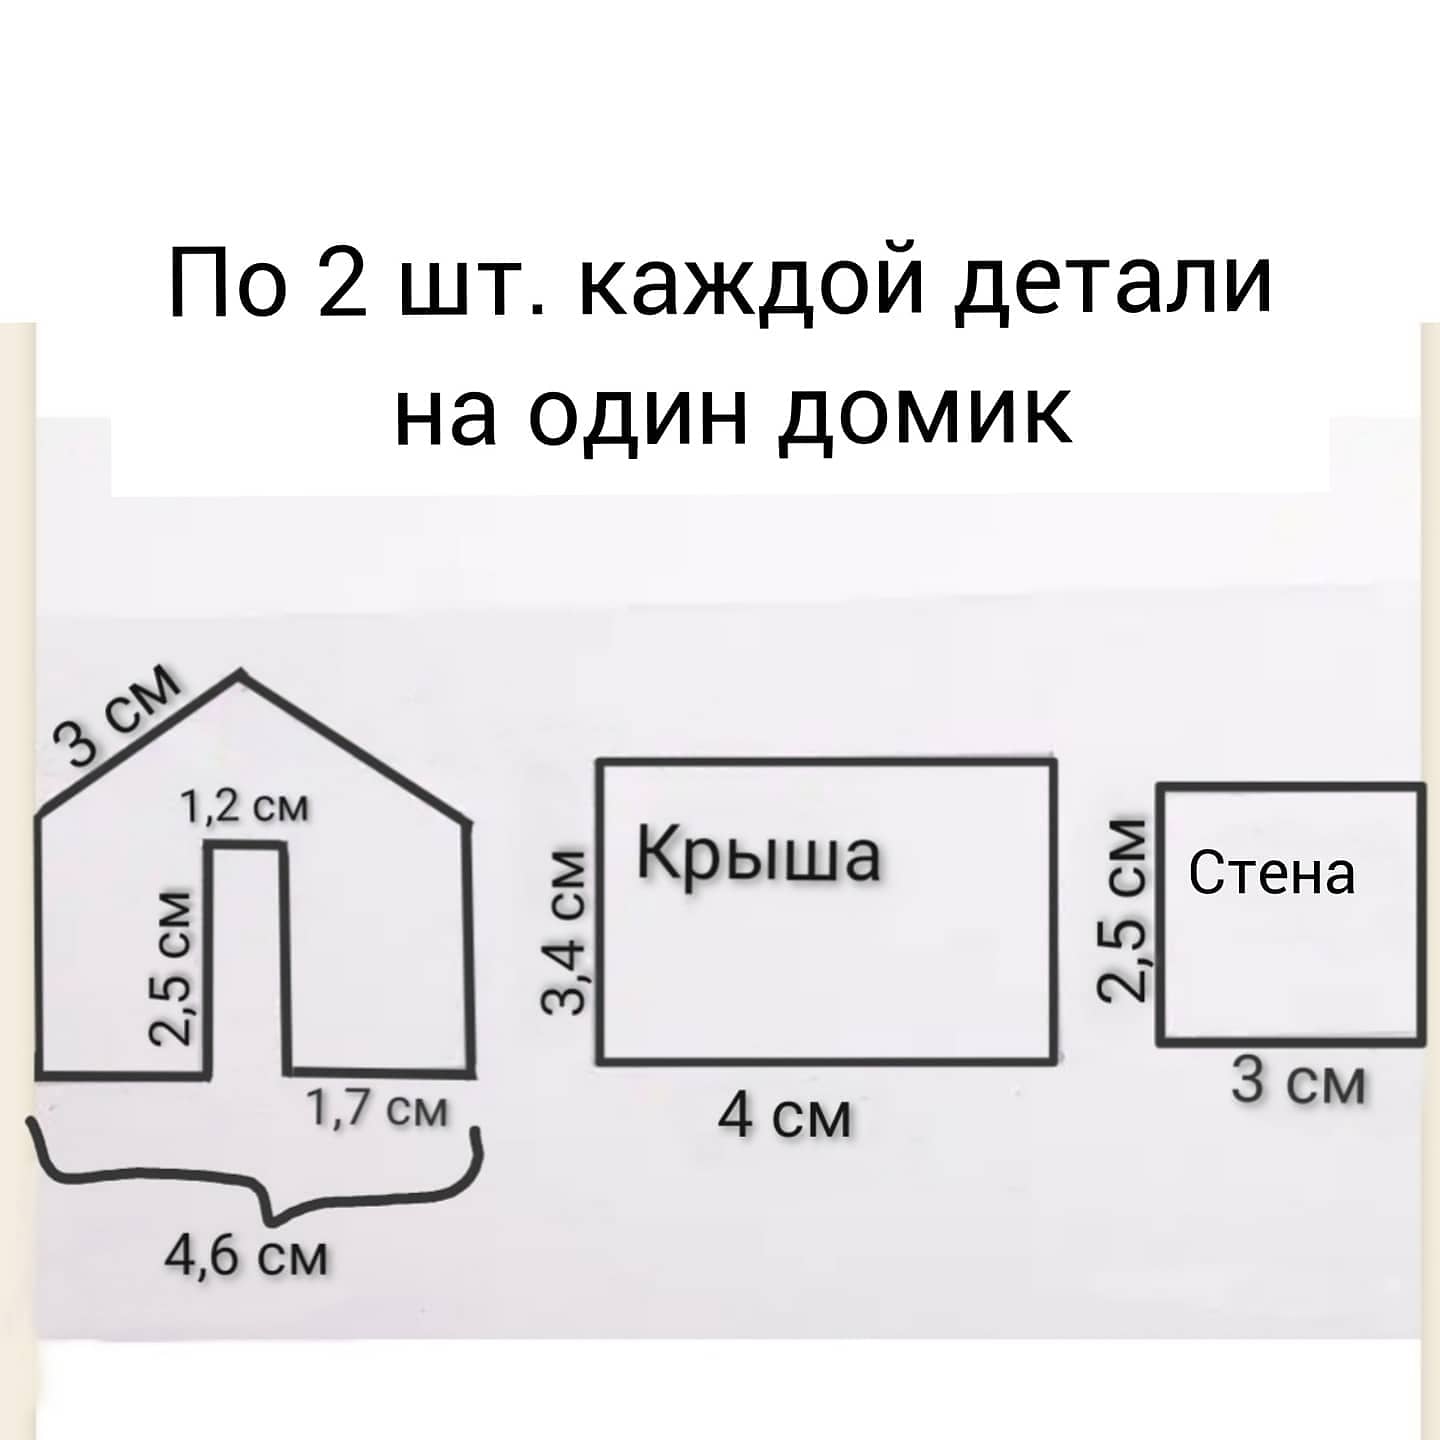 Р Пряничный домик по цене руб – Схемы, наборы в интернет-магазине в Москве